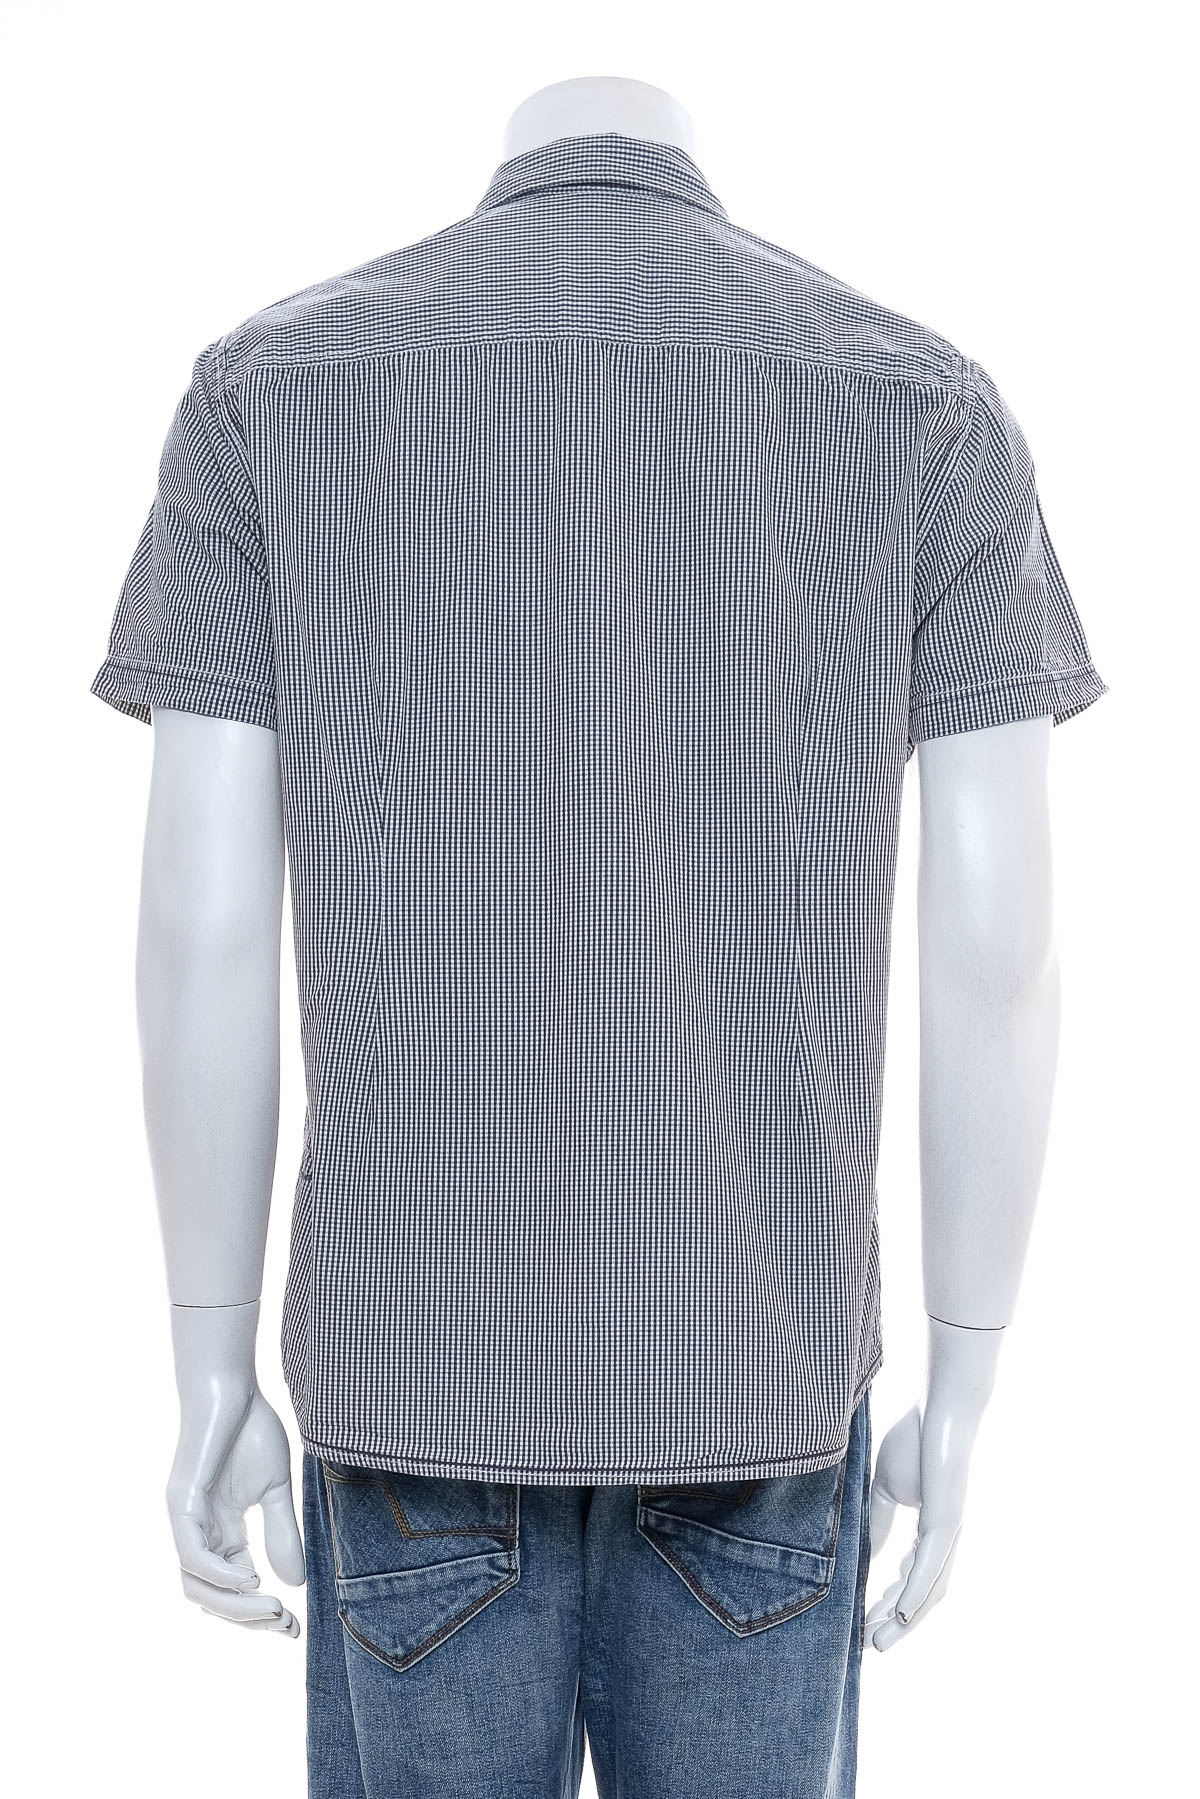 Men's shirt - S.Oliver - 1